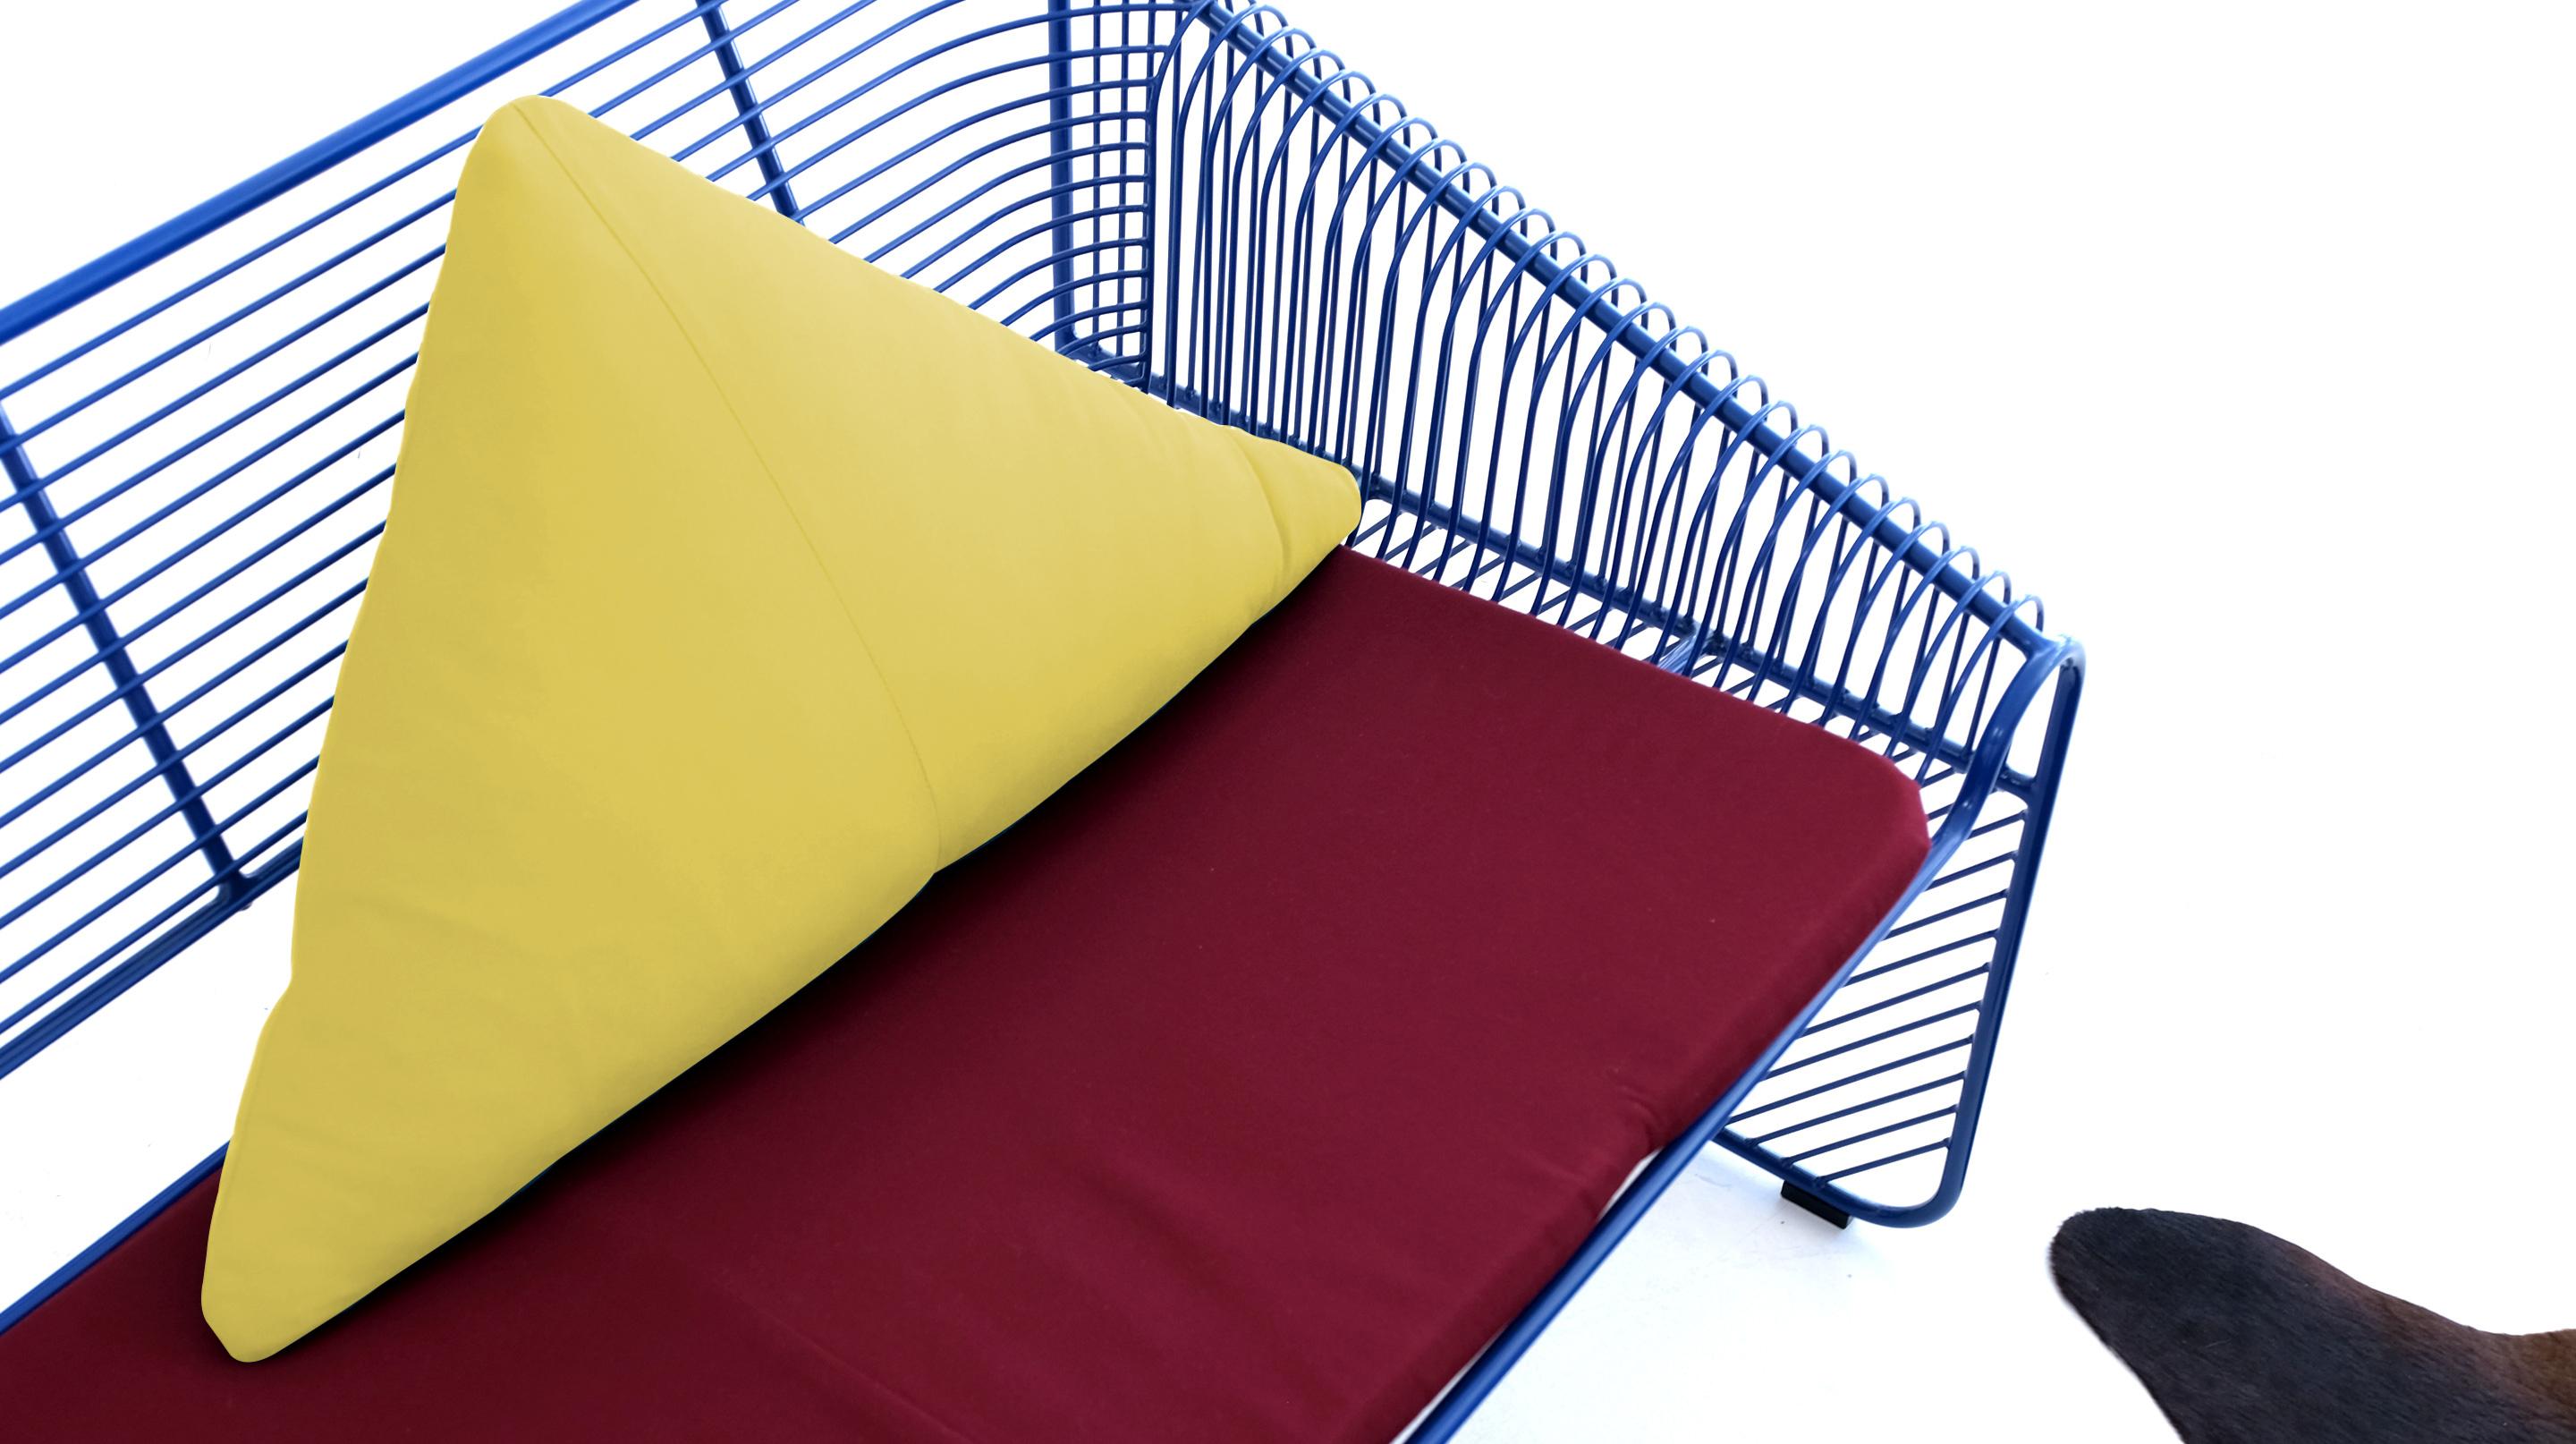 IDÉES D'ACCENTS COLORÉS POUR LA MAISON

Nos oreillers triangulaires sont remplis de duvet et sont disponibles dans une variété de couleurs de tissus Sunbrella pour répondre à vos besoins en matière de décoration. Avec plus de 10 couleurs au choix,